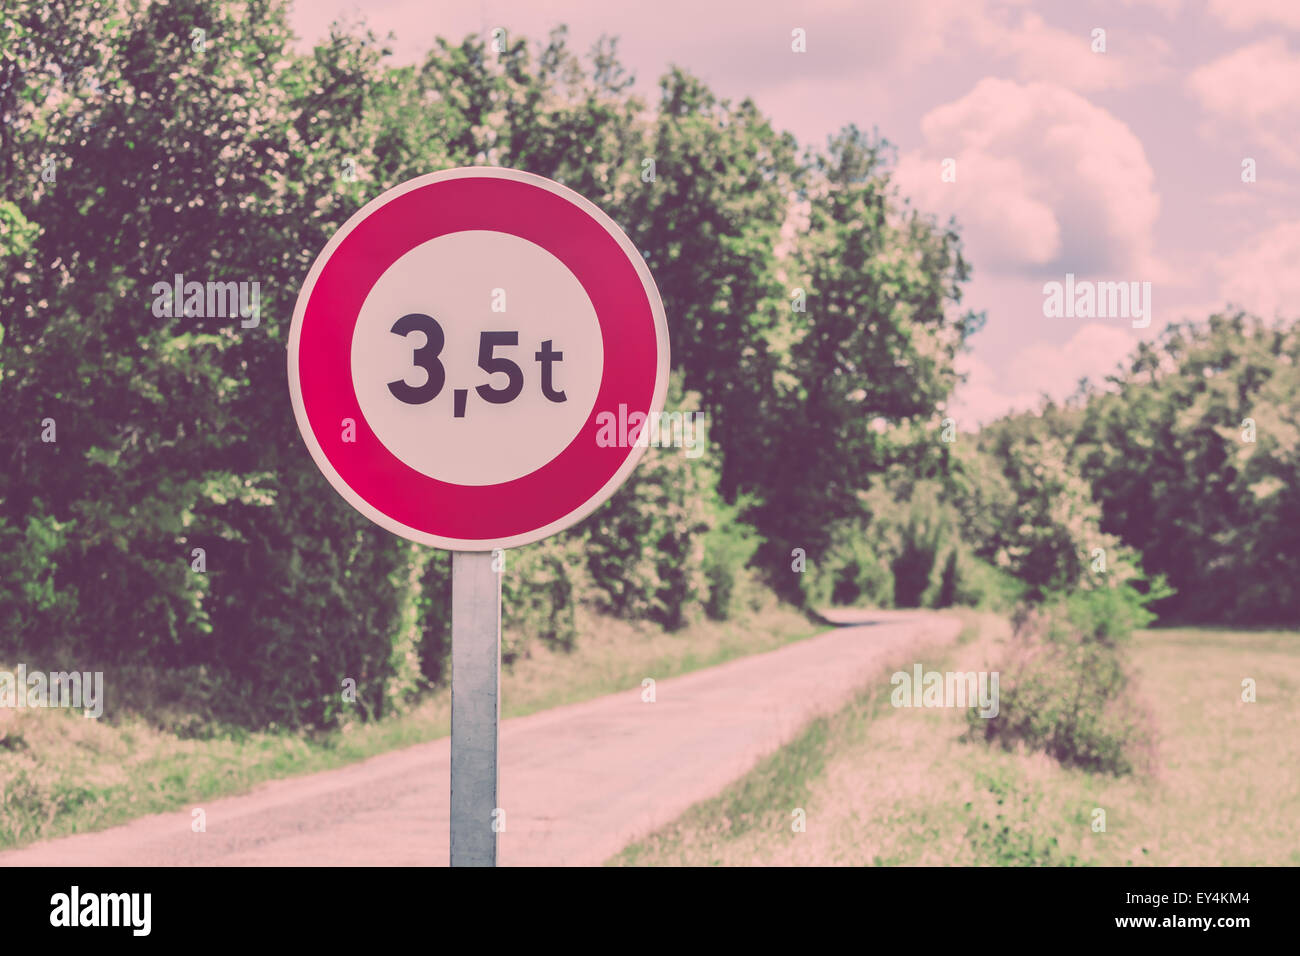 Verkehrszeichen von 3,5 Tonnen wiegen Beschränkung auf einem Feldweg Hintergrund. Gefiltertes Bild Stockfoto